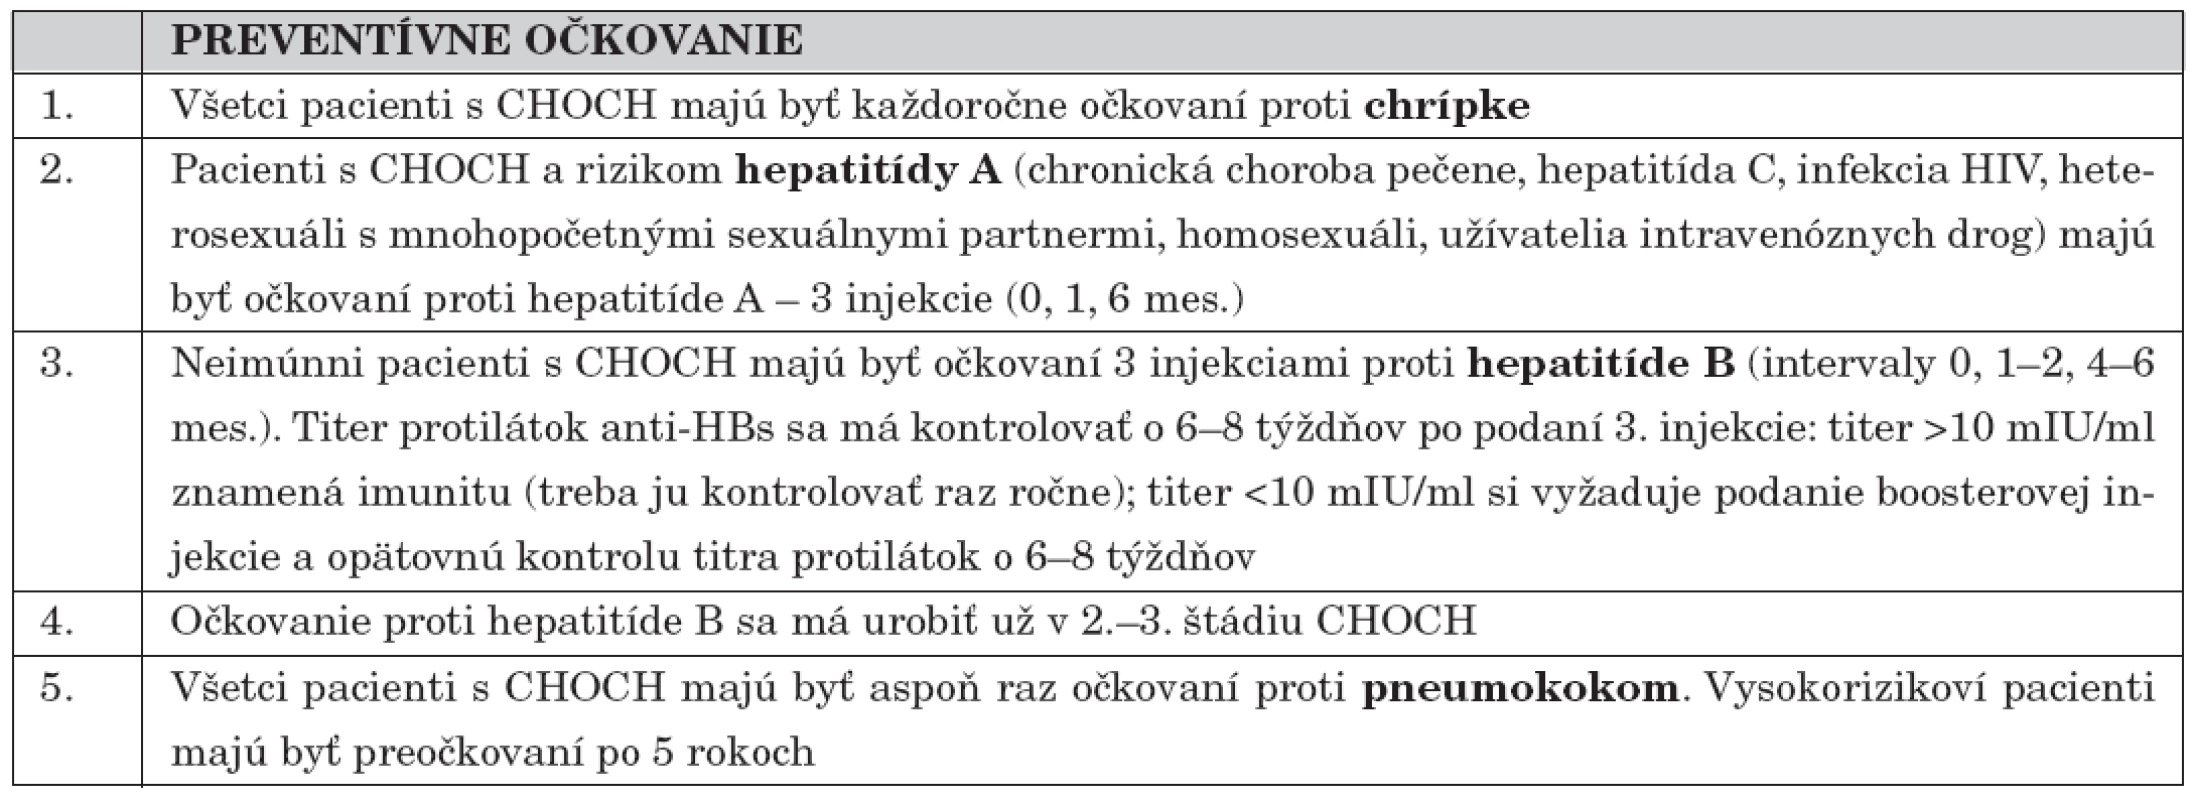 Preventívne očkovania u chorých s chronickou obličkovou chorobou (CHOCH) (podľa [2]).